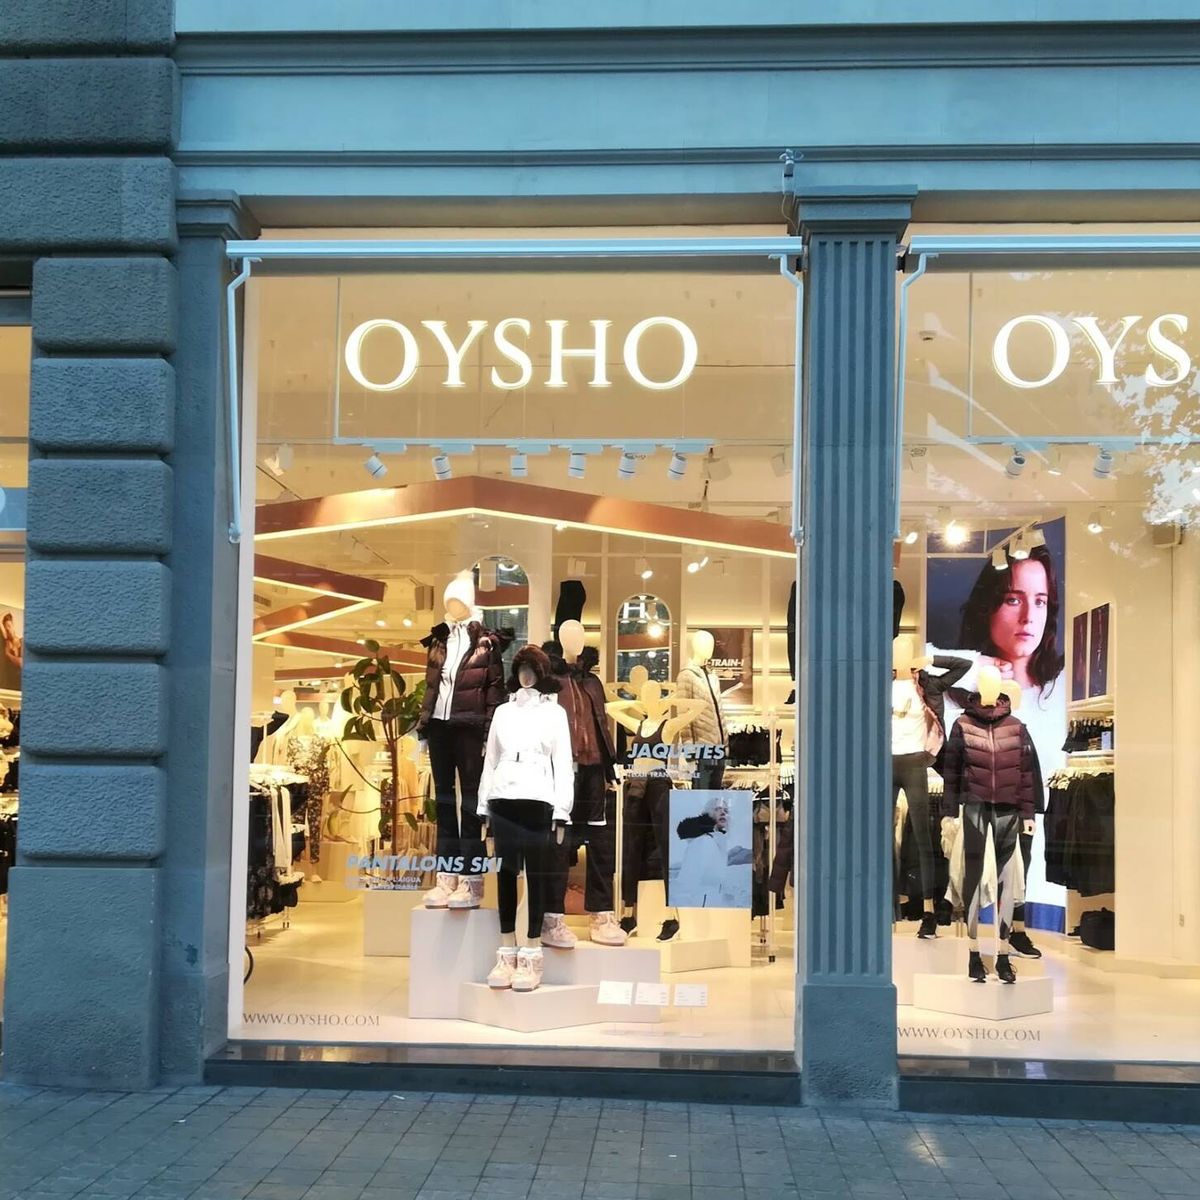 Oysho recibe el a 'flagship' en Sol, pero cuatro años después y en de cierres